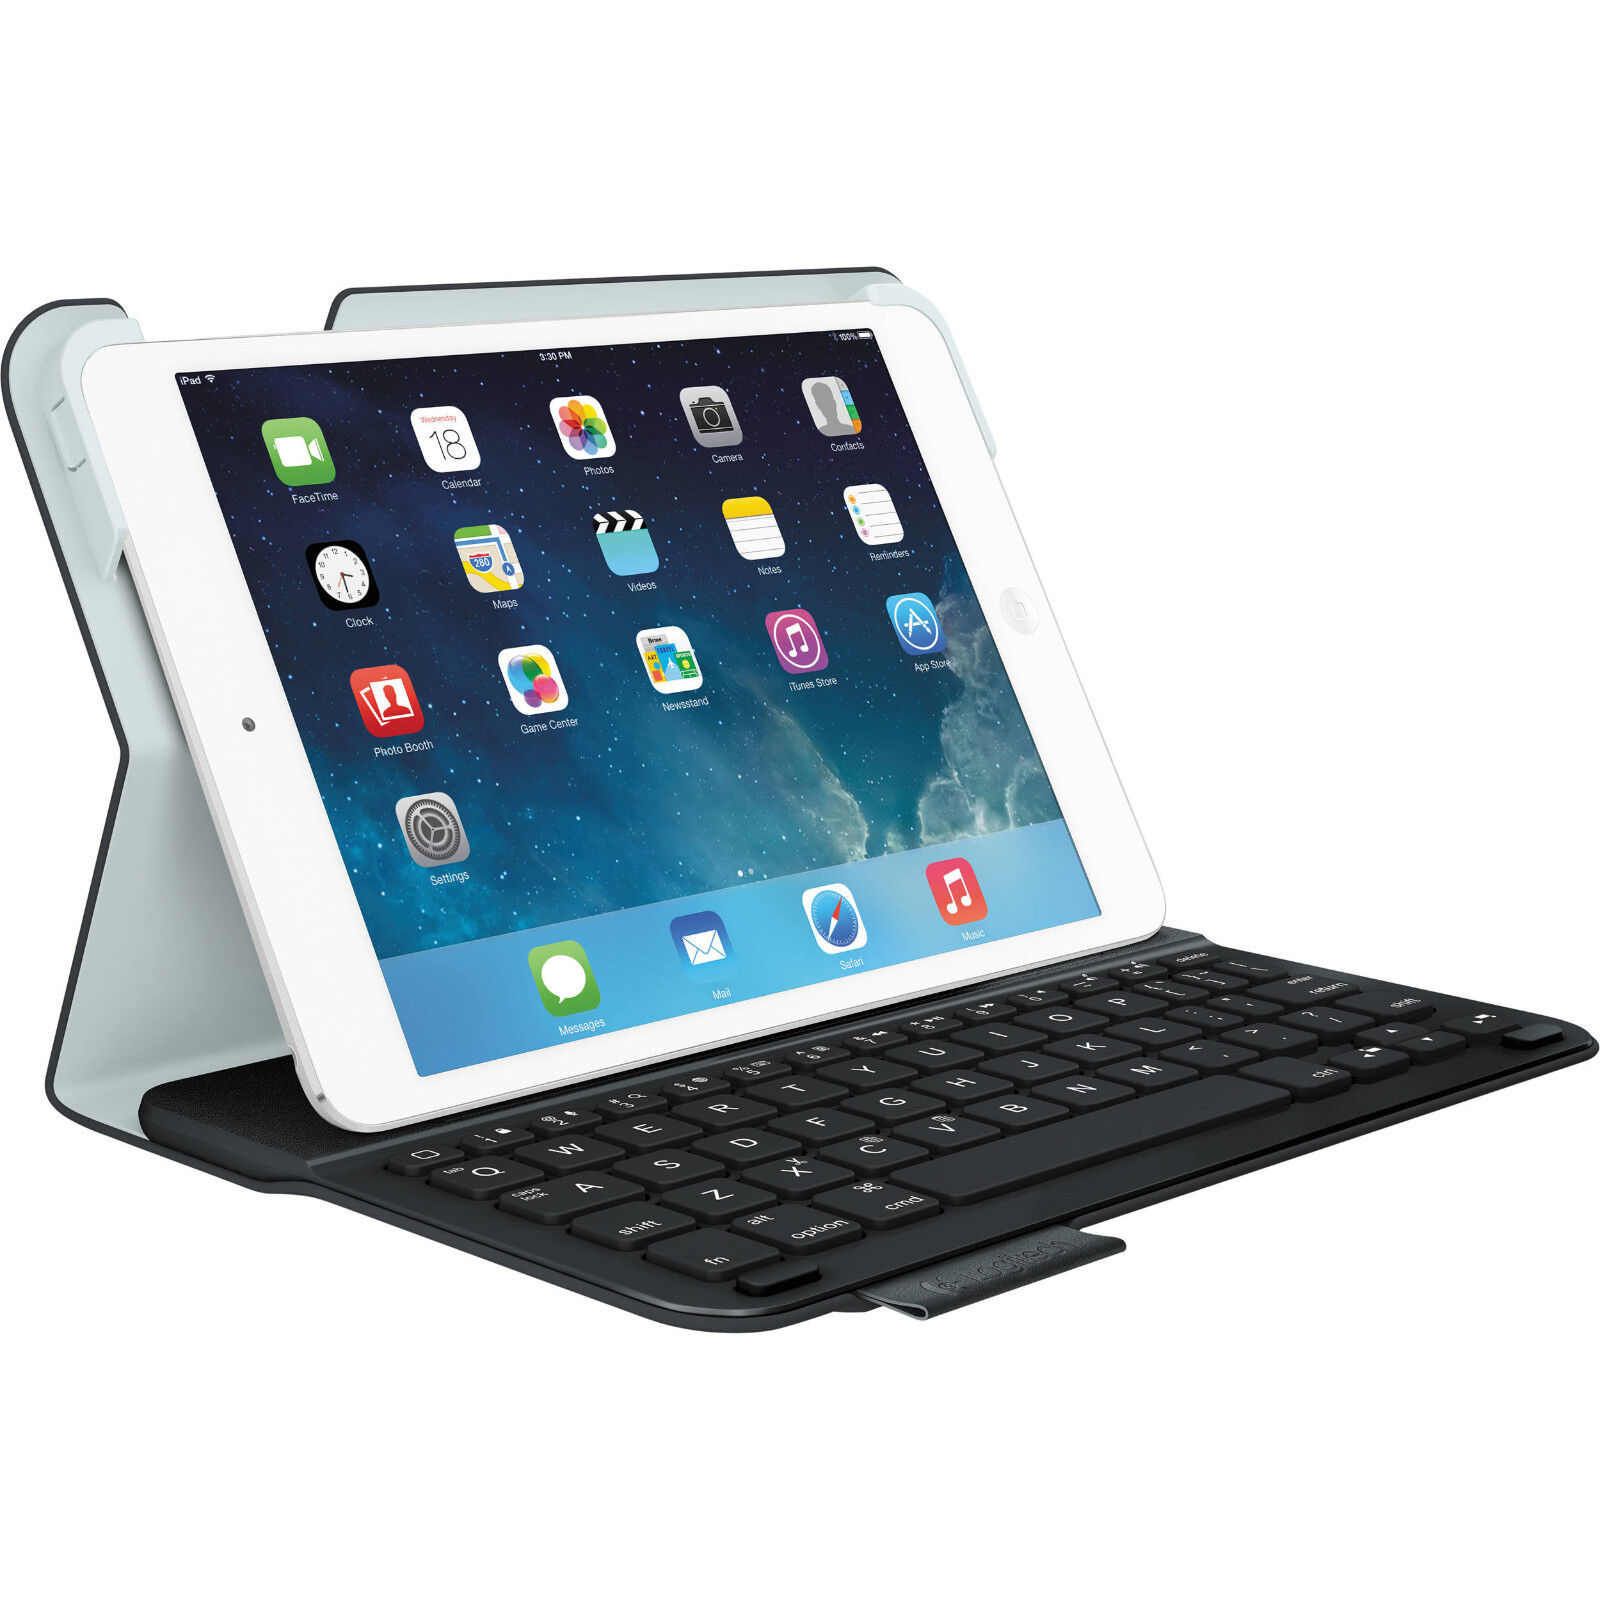 Onset enkemand haj Logitech Wireless Ultrathin Keyboard Folio Case iPad Mini 1, 2 & 3 Carbon  Black 12300202602 | eBay